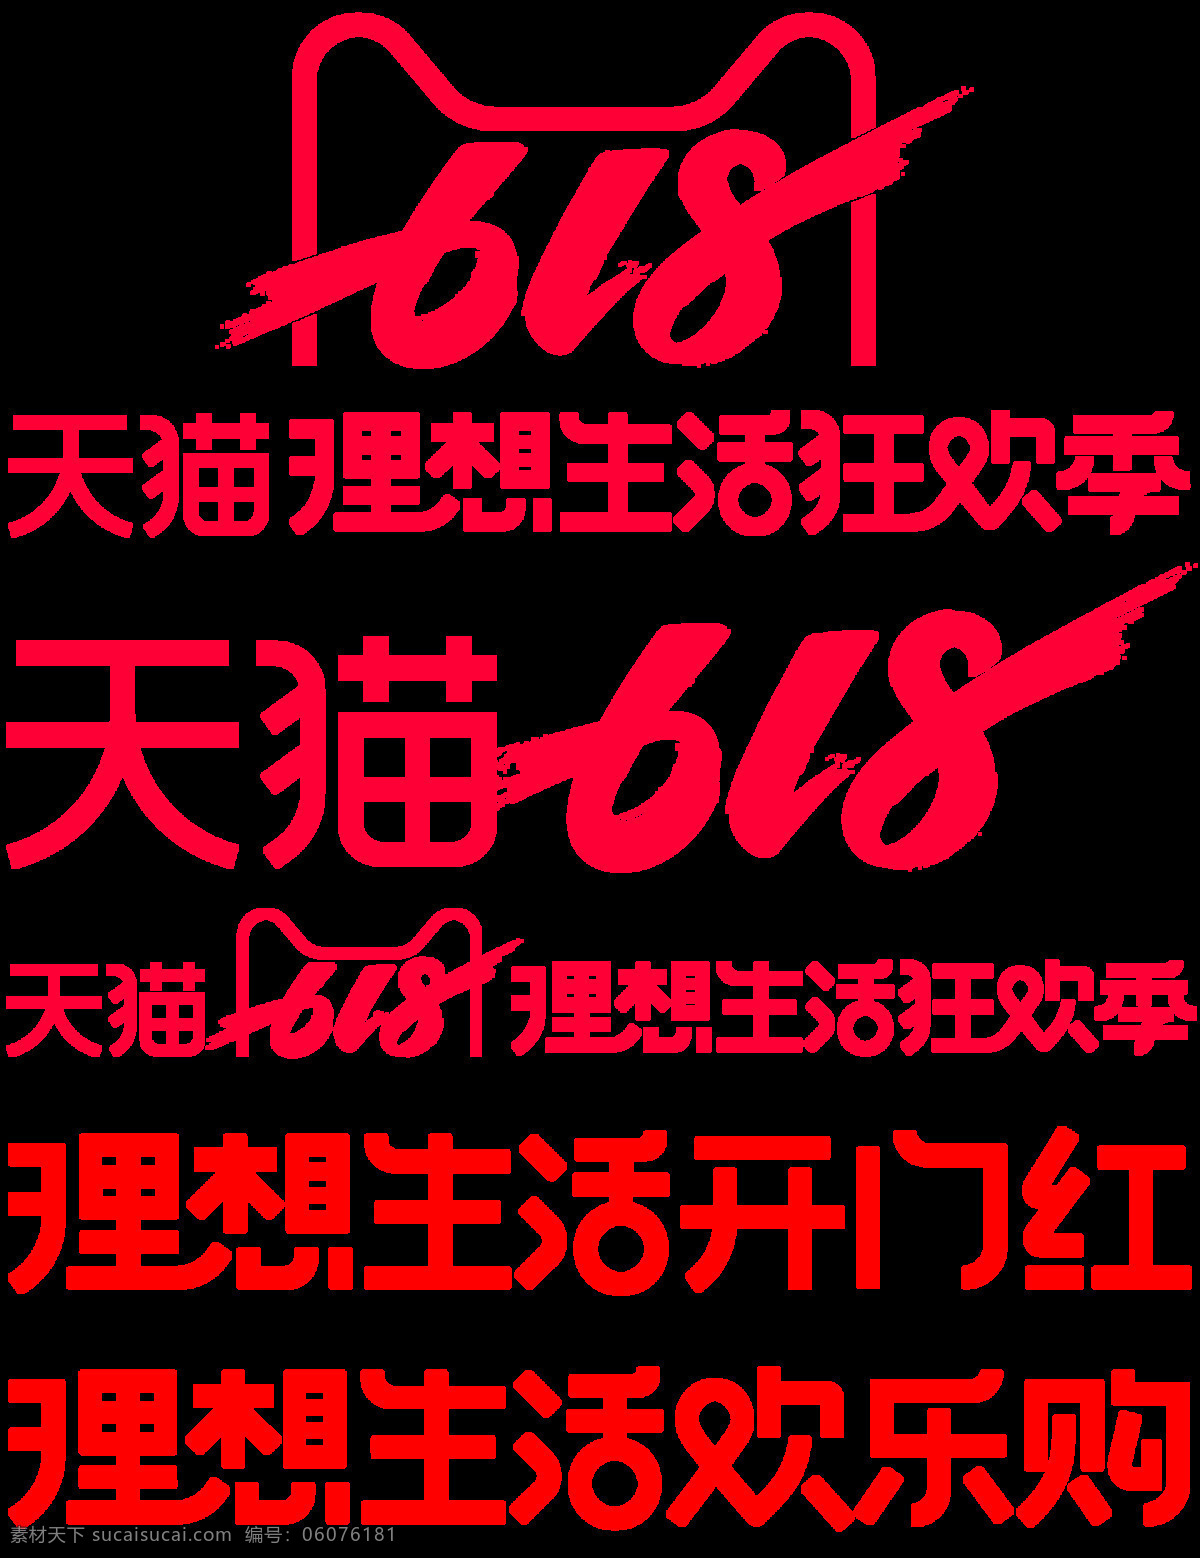 2019 天猫 618 理想 生活 狂 季 狂欢季 年中大促 天猫logo 官方欢乐购 psd分层 分层